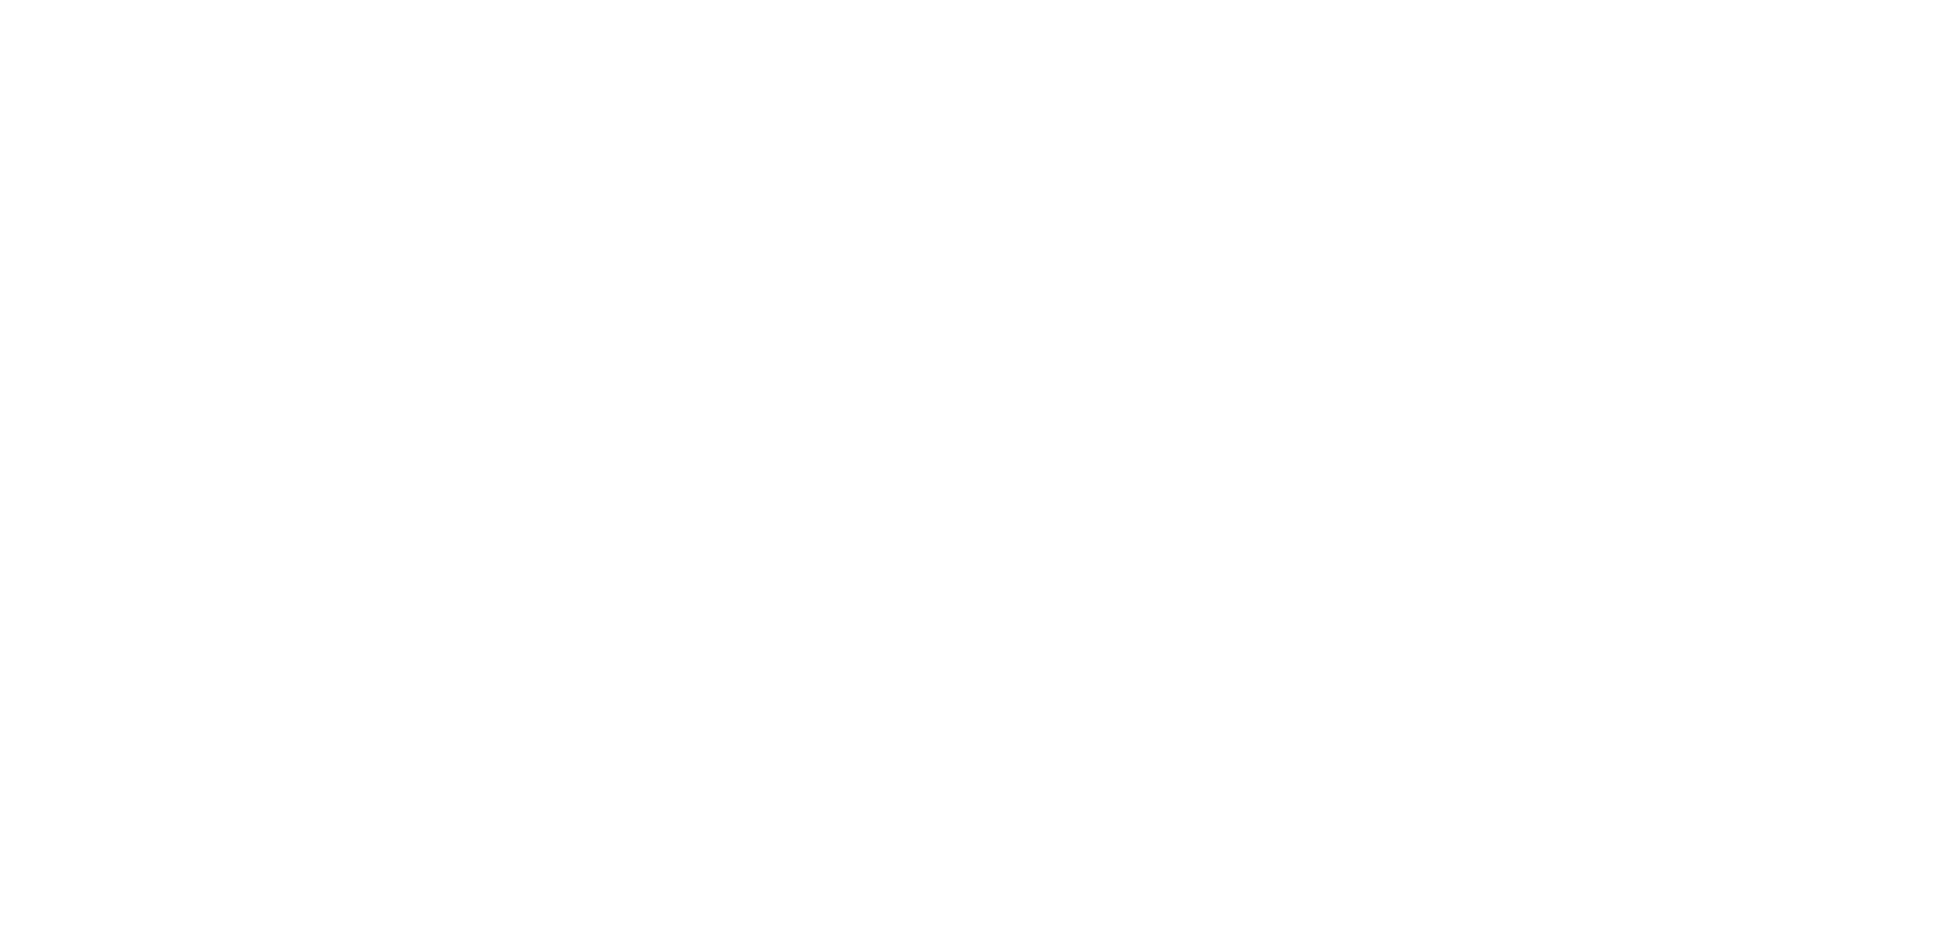 WRE_Homes&Estates_logo_REV